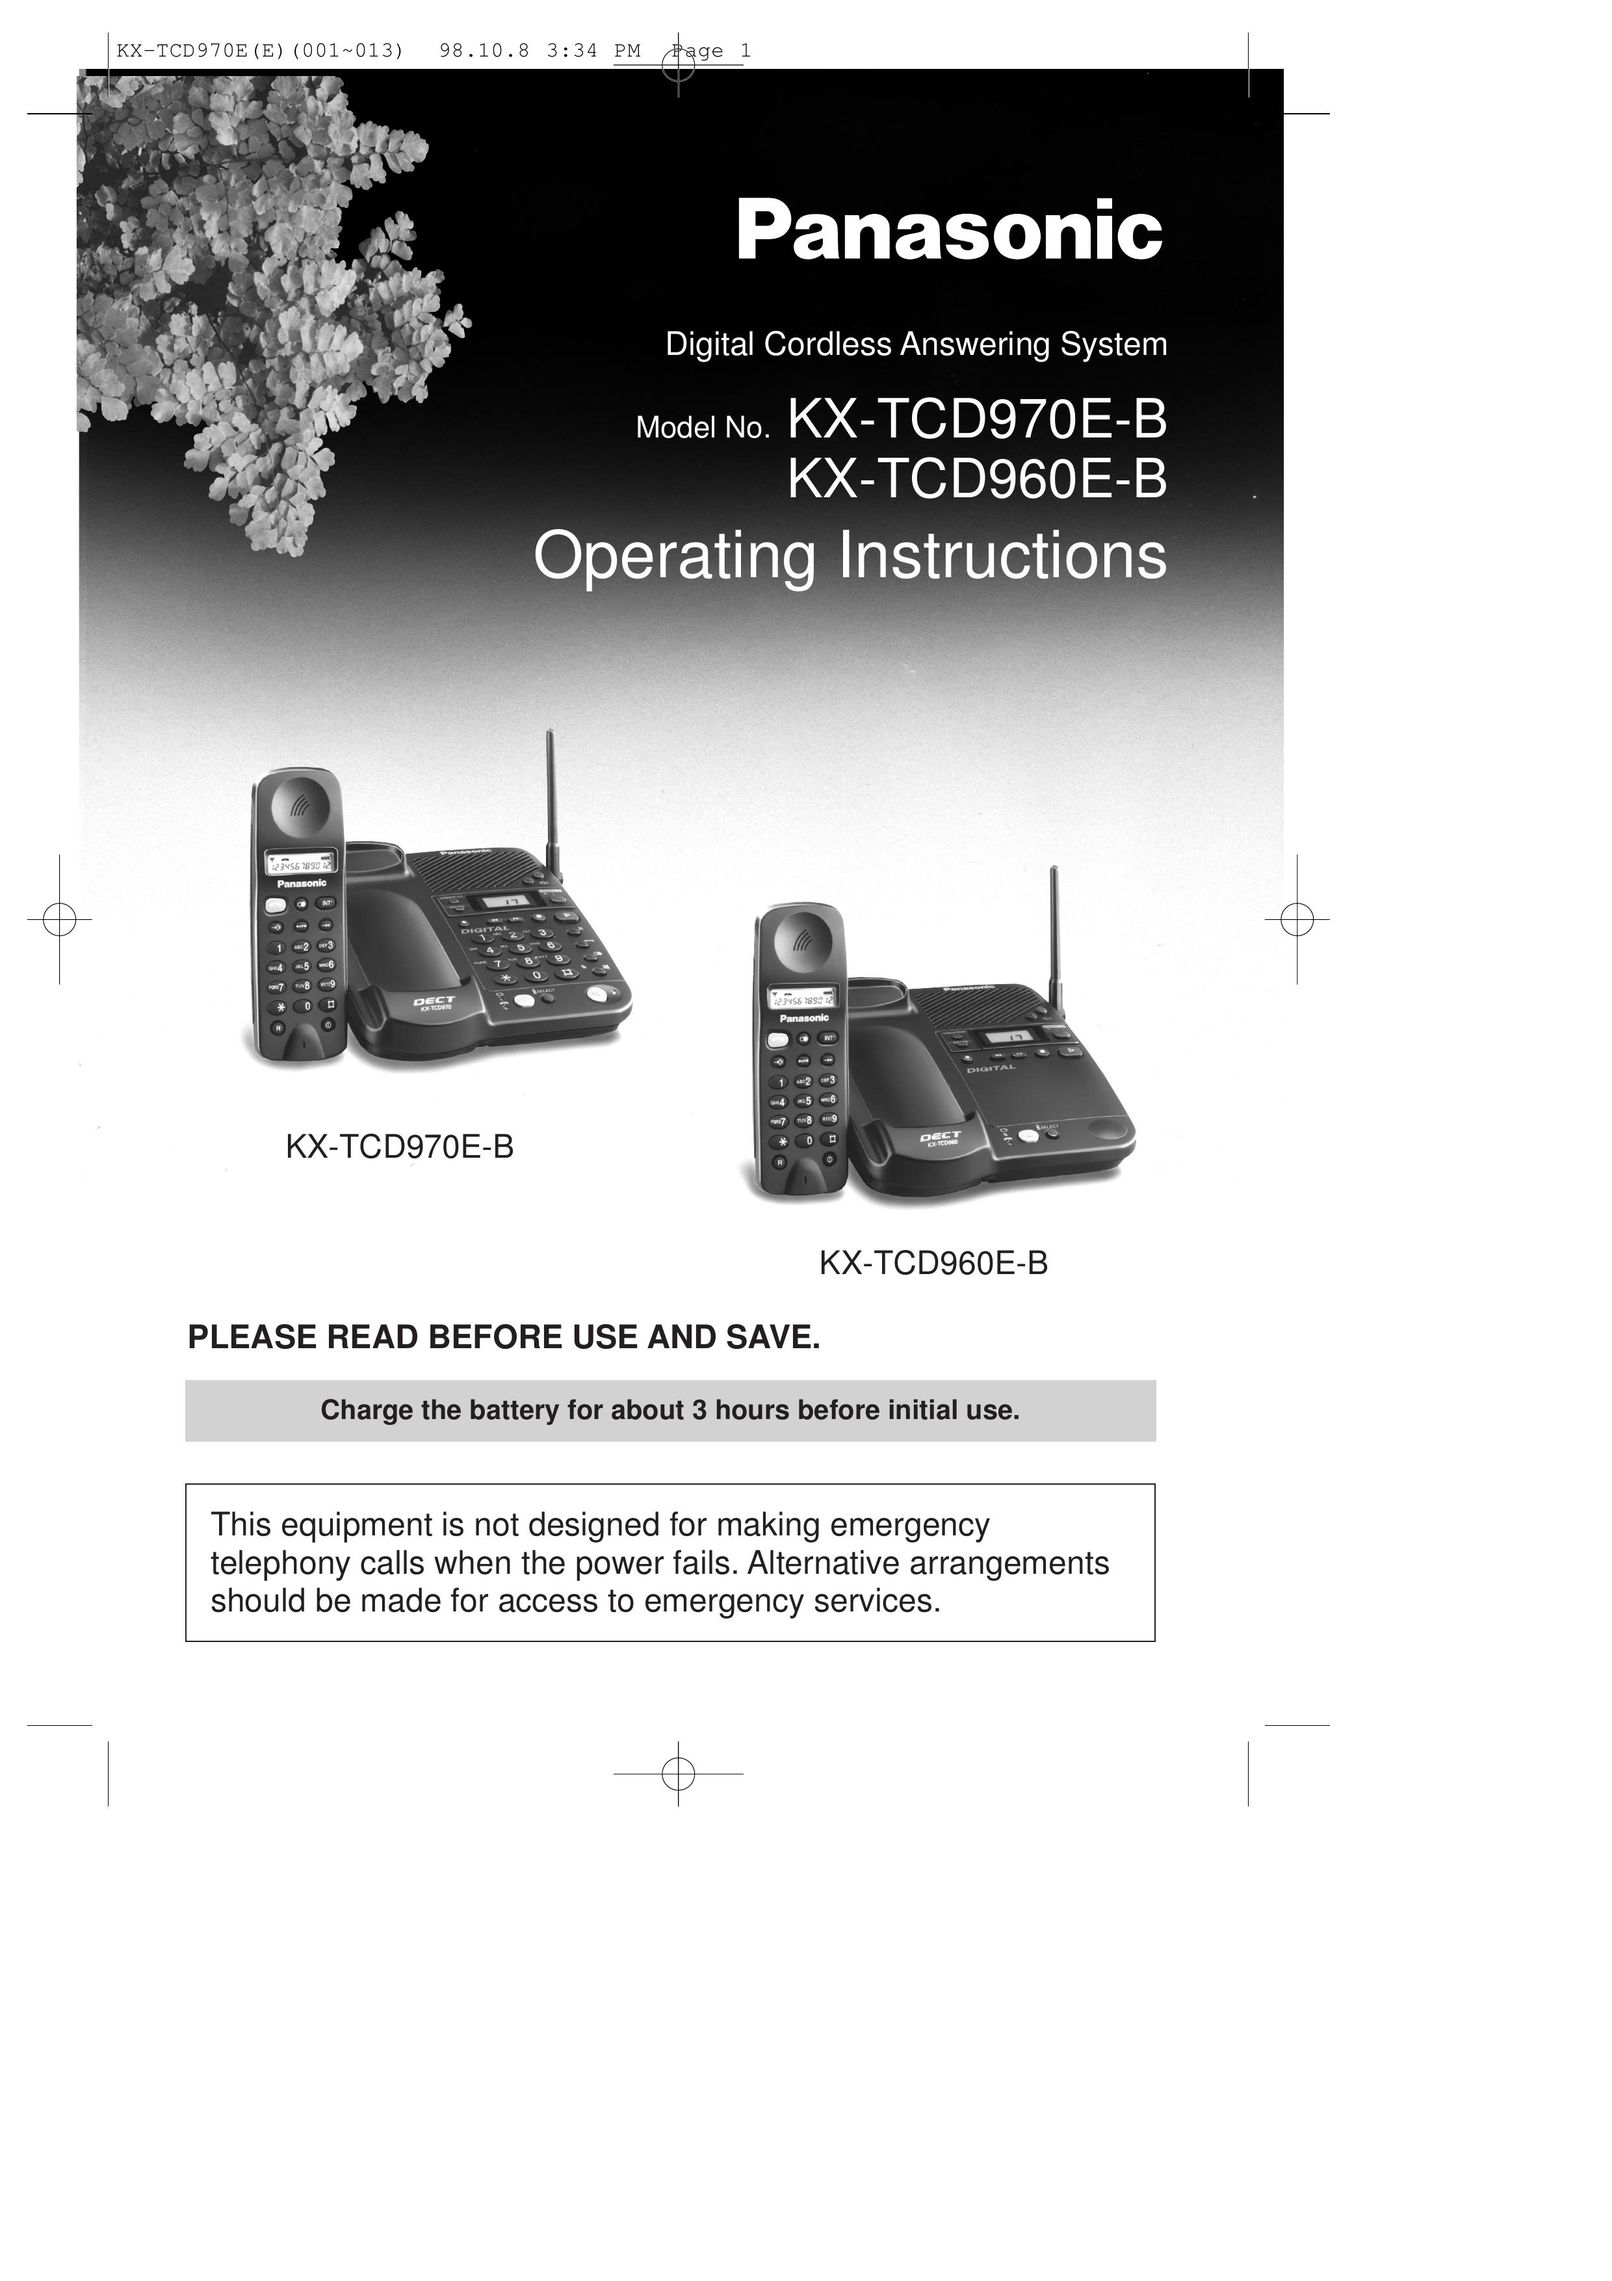 Panasonic KX-TCD960E-B Cordless Telephone User Manual